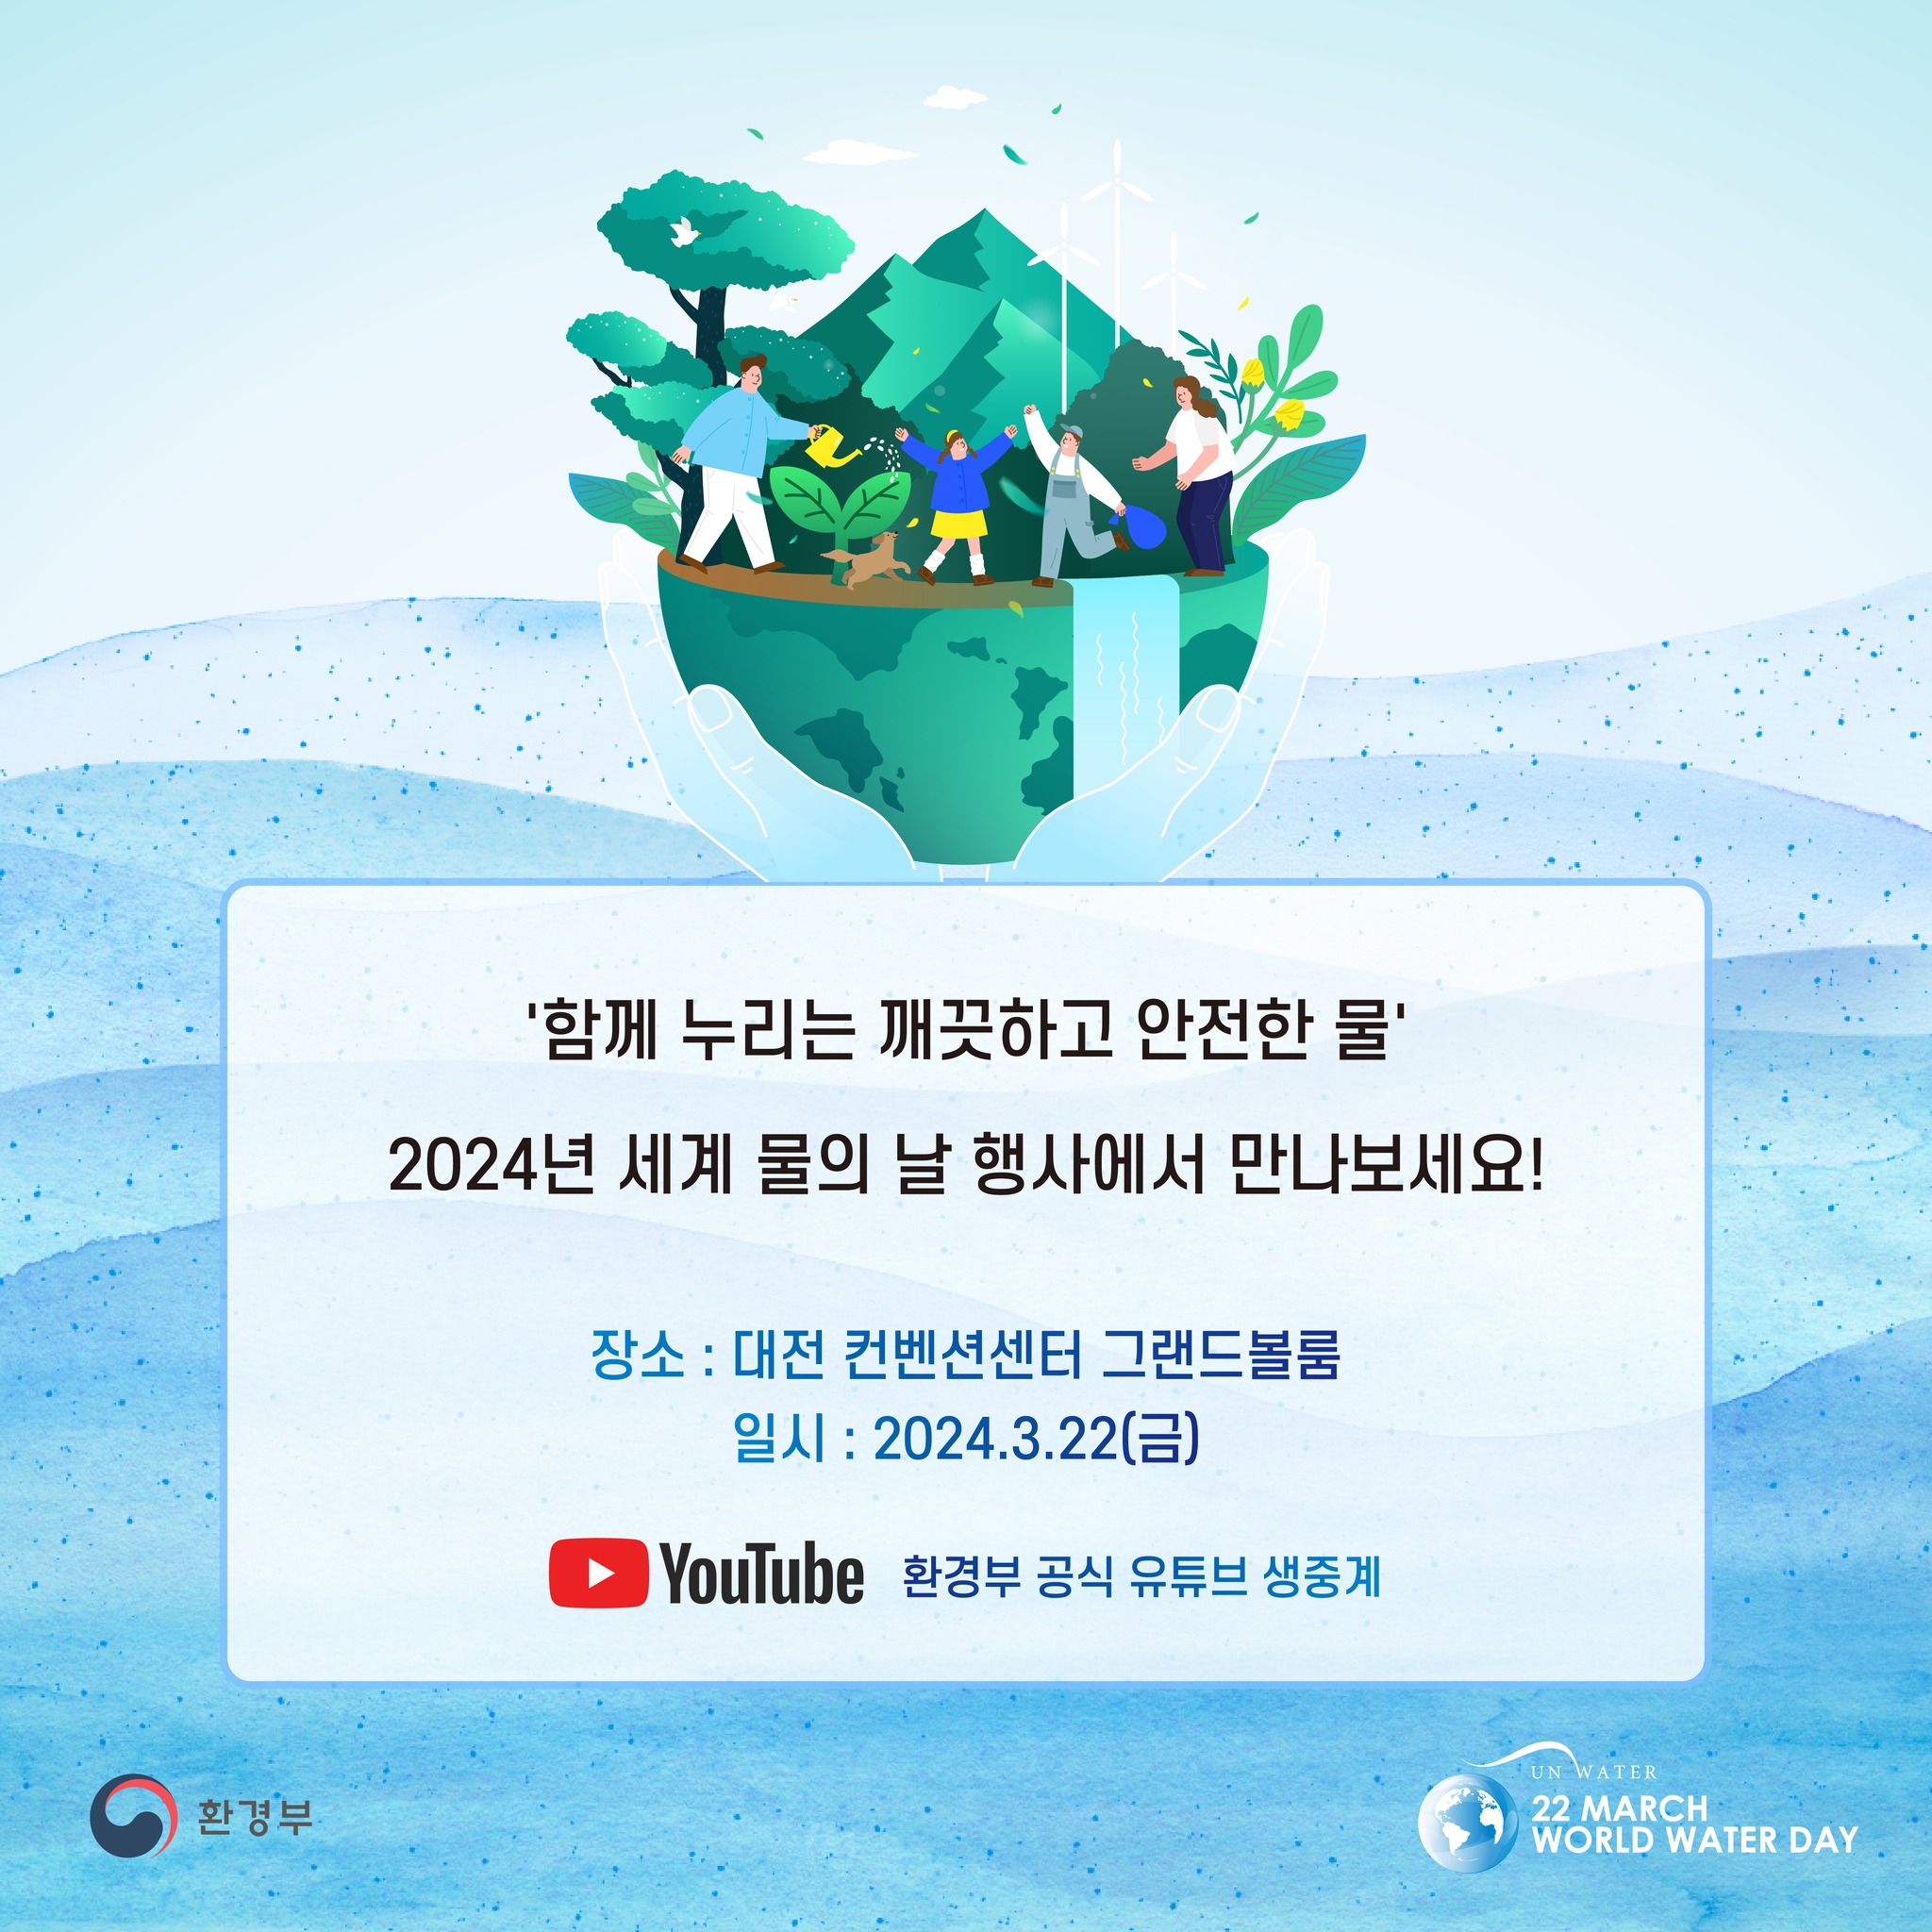 '함께 누리는 깨끗하고 안전한 물' 2024년 세계 물의 날 행사에서 만나보세요! 장소 : 대전컨벤션센터 그랜드볼룸 일시 : 2024.3.22(금) YouTube 환경부 공식 유튜브 생중계 환경부 UN WATER 22 MARCH WORLD WATER DAY